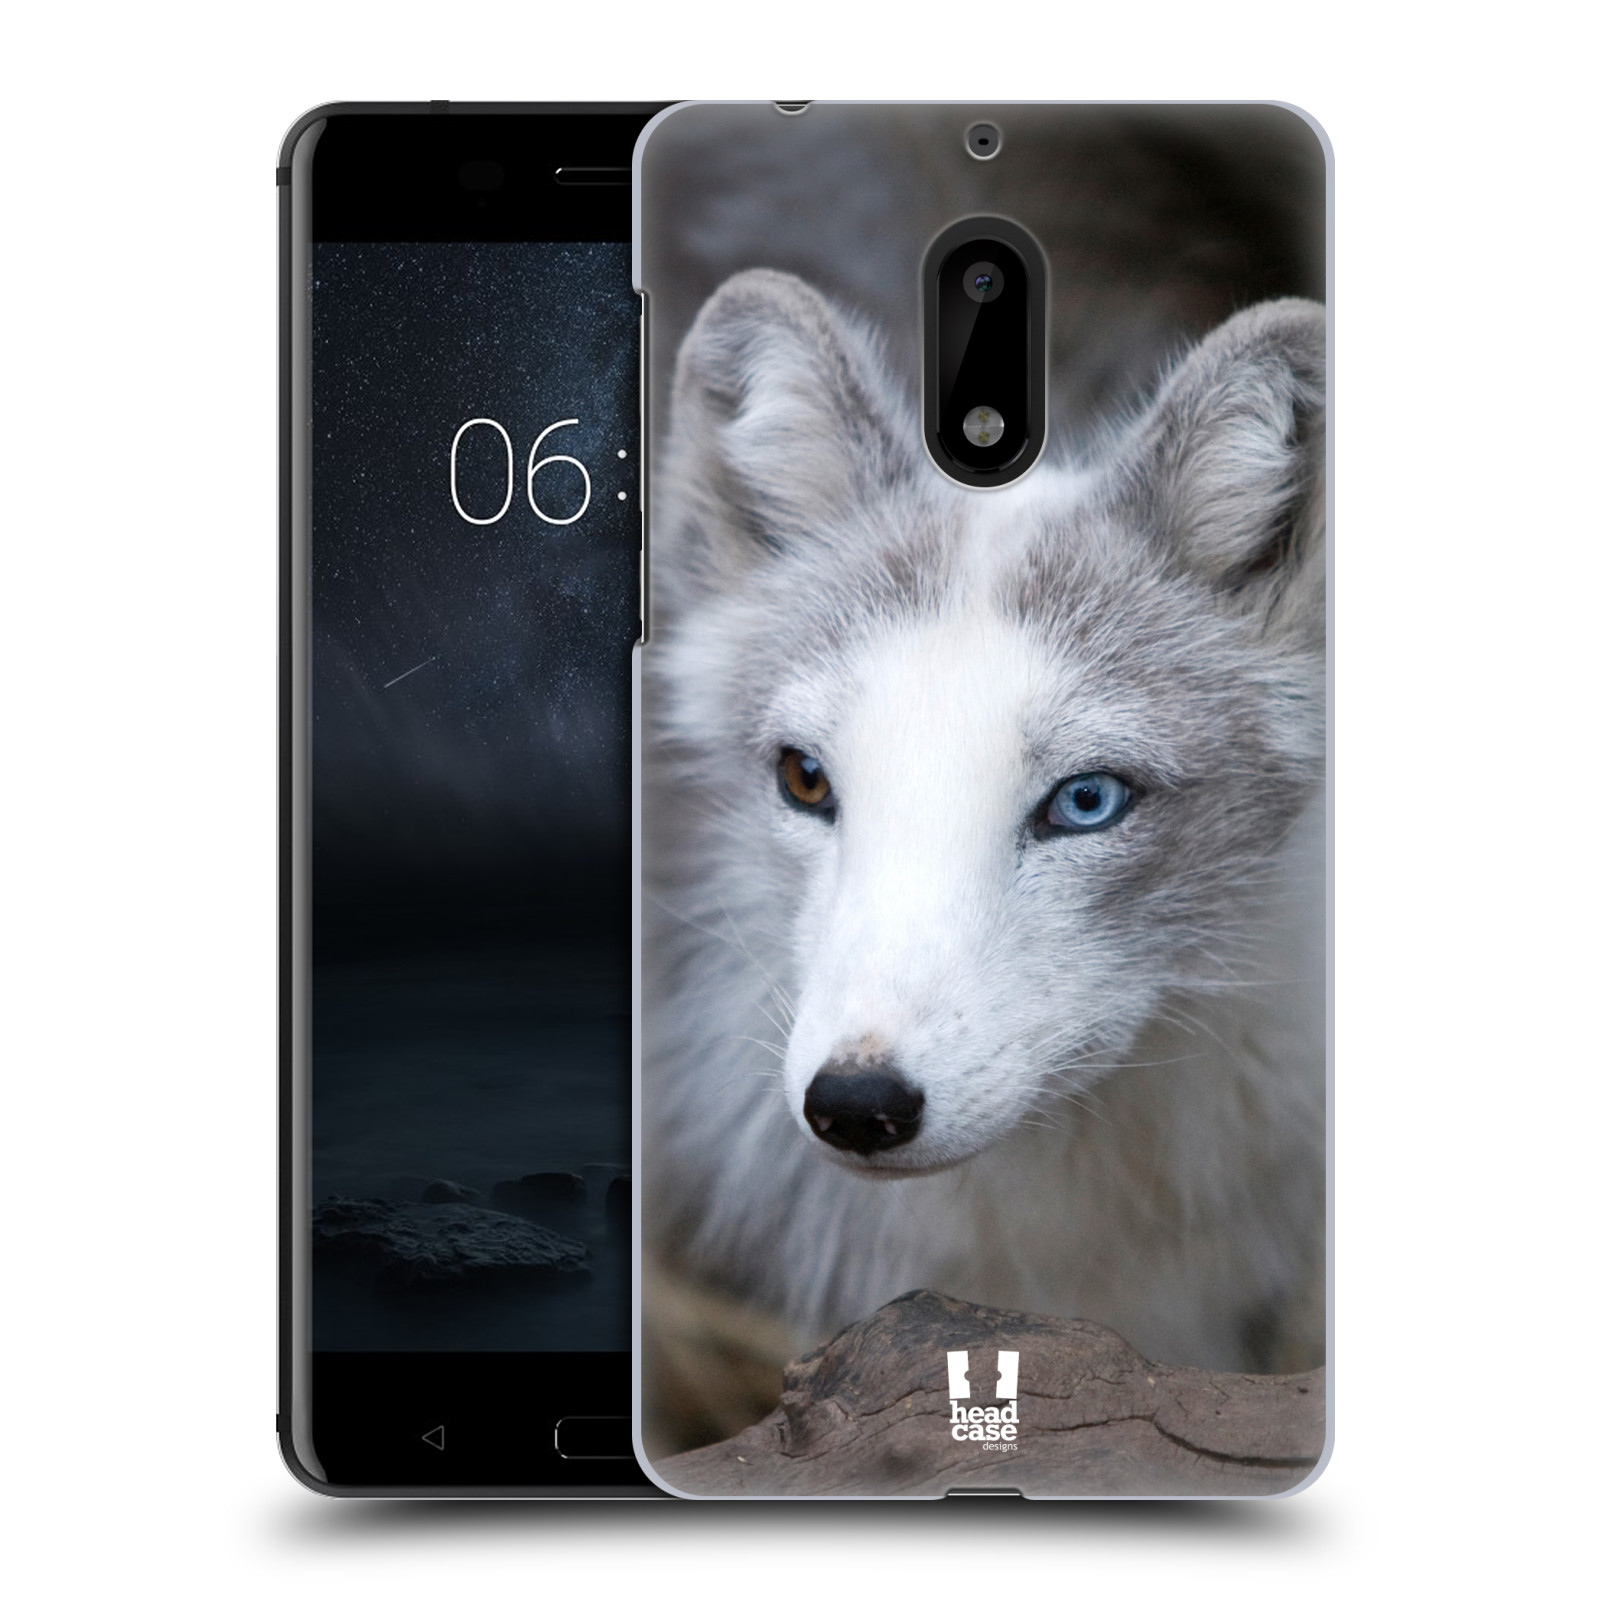 HEAD CASE plastový obal na mobil Nokia 6 vzor slavná zvířata foto  Liška polární